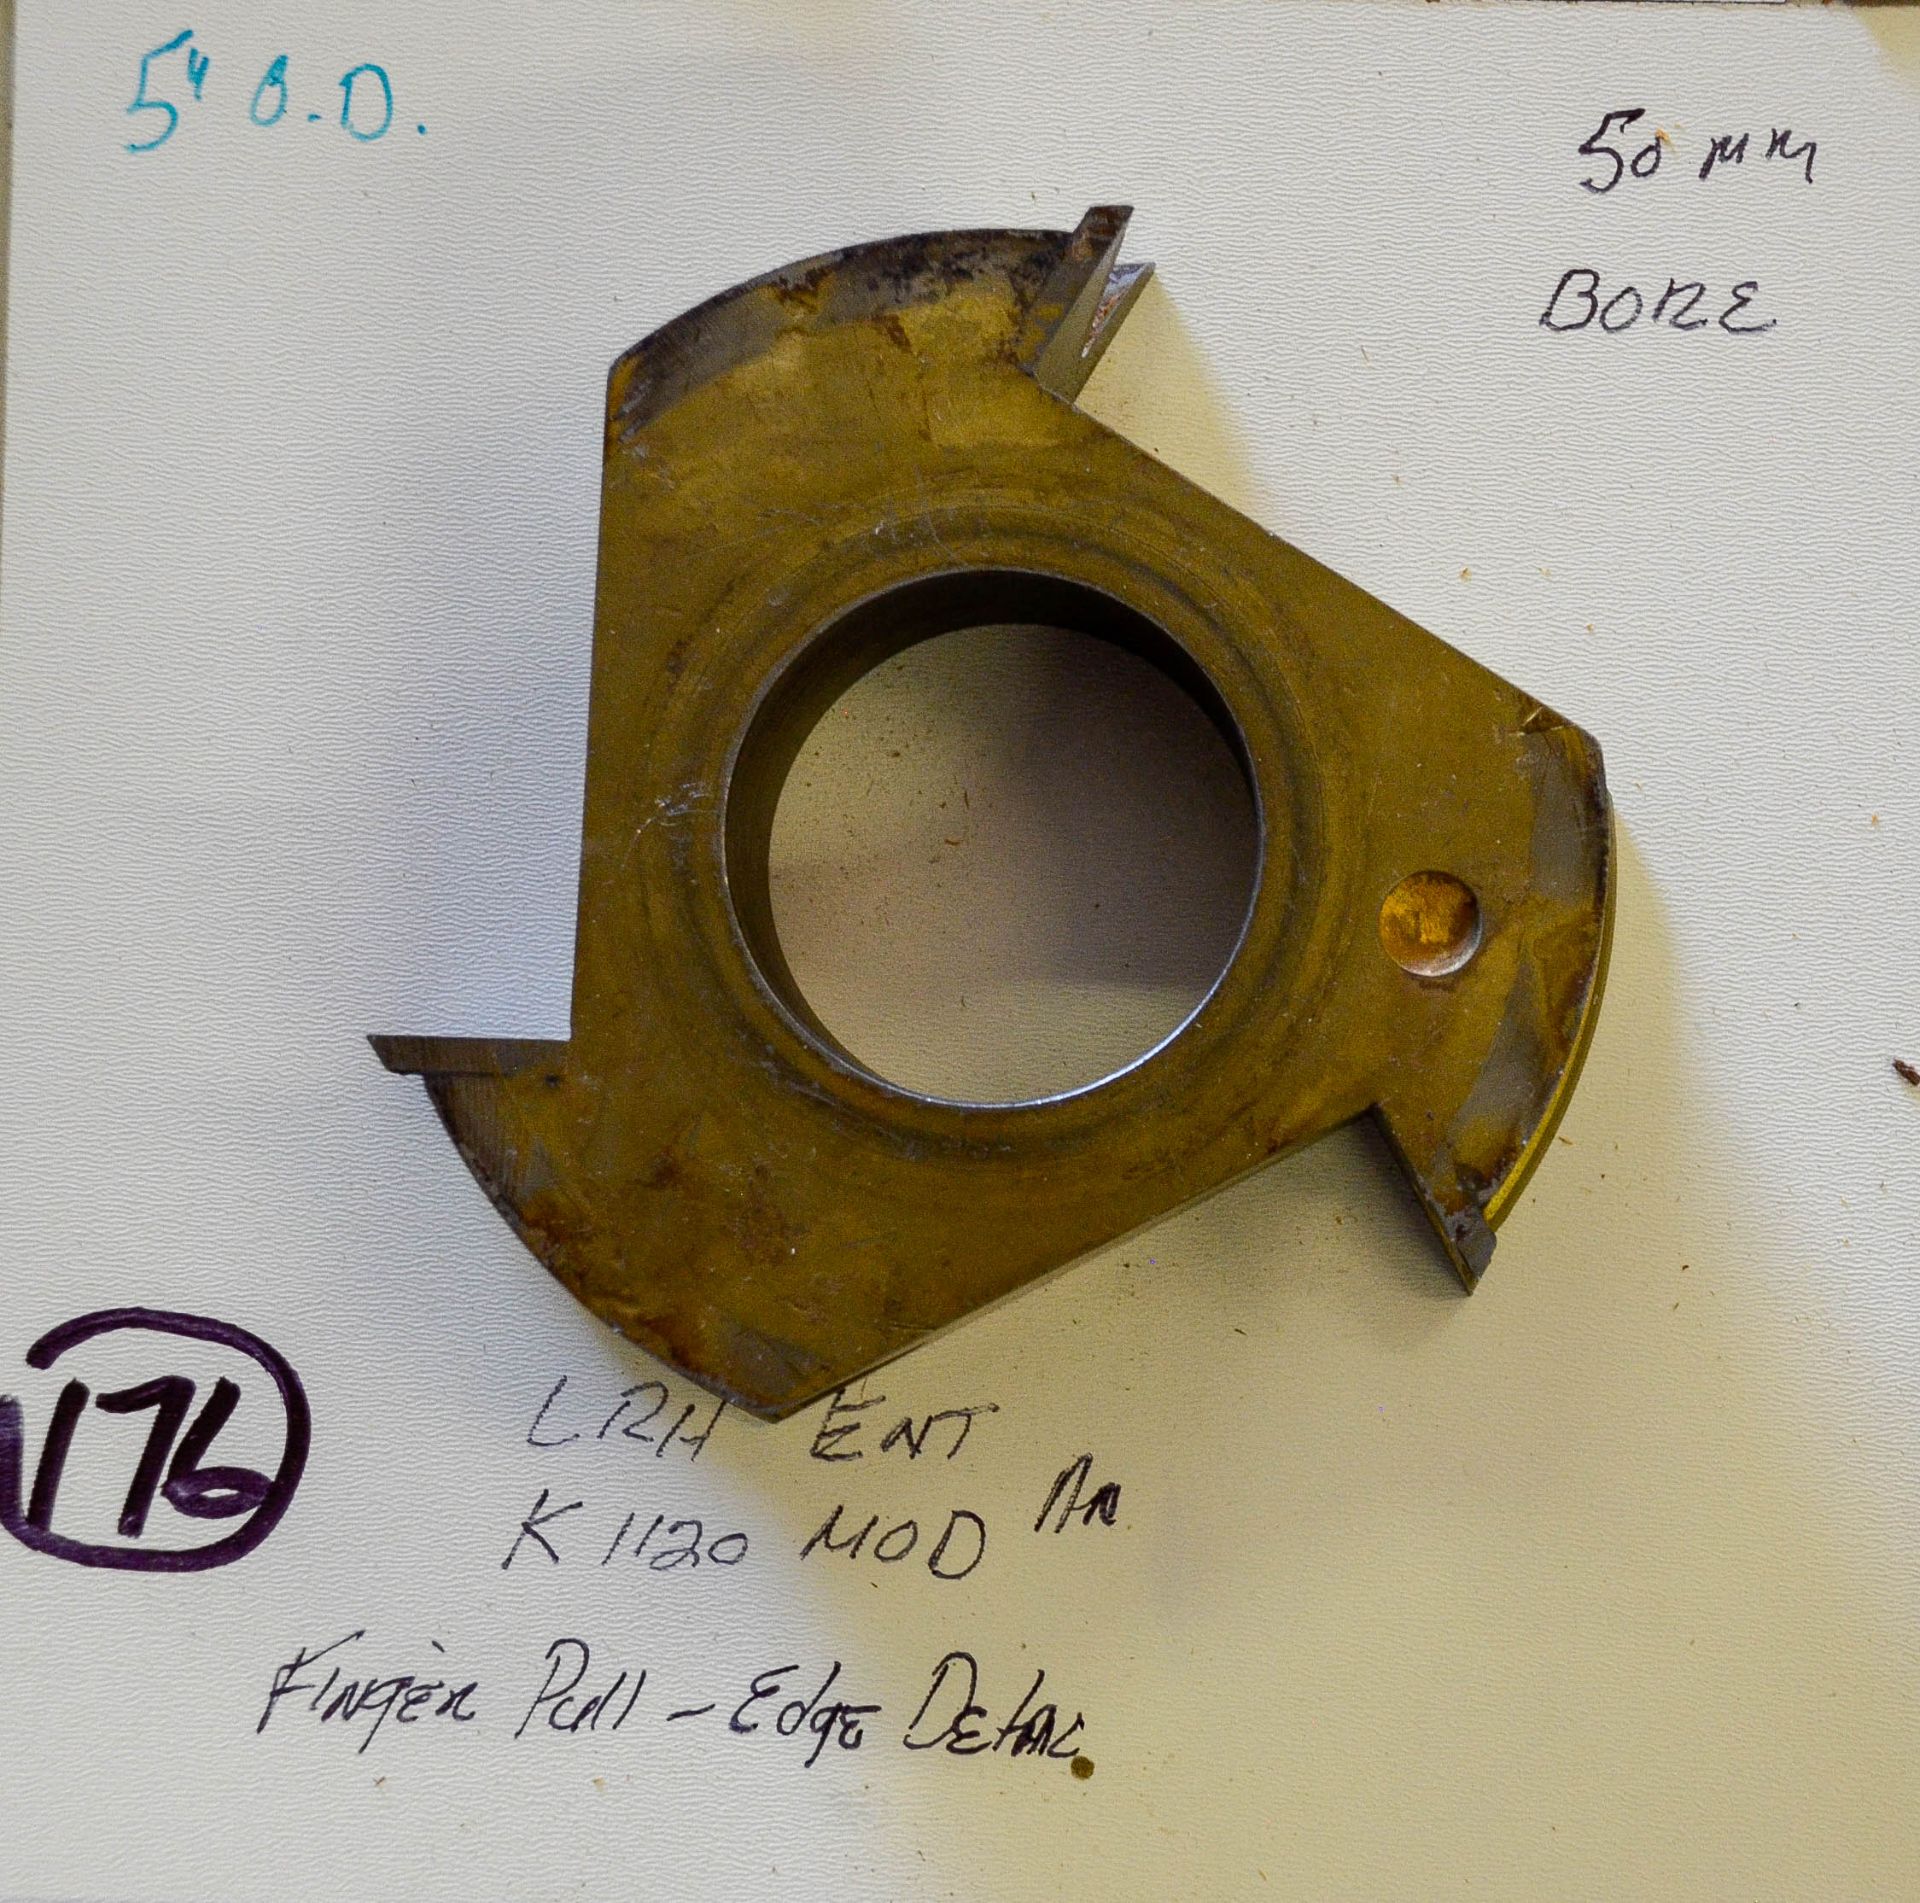 Shaper Cutter, L.R.H. ENT. K 1120 Mod, Fingerpull or Edge Detail, 5" Outside Diameter, 50mm Bore